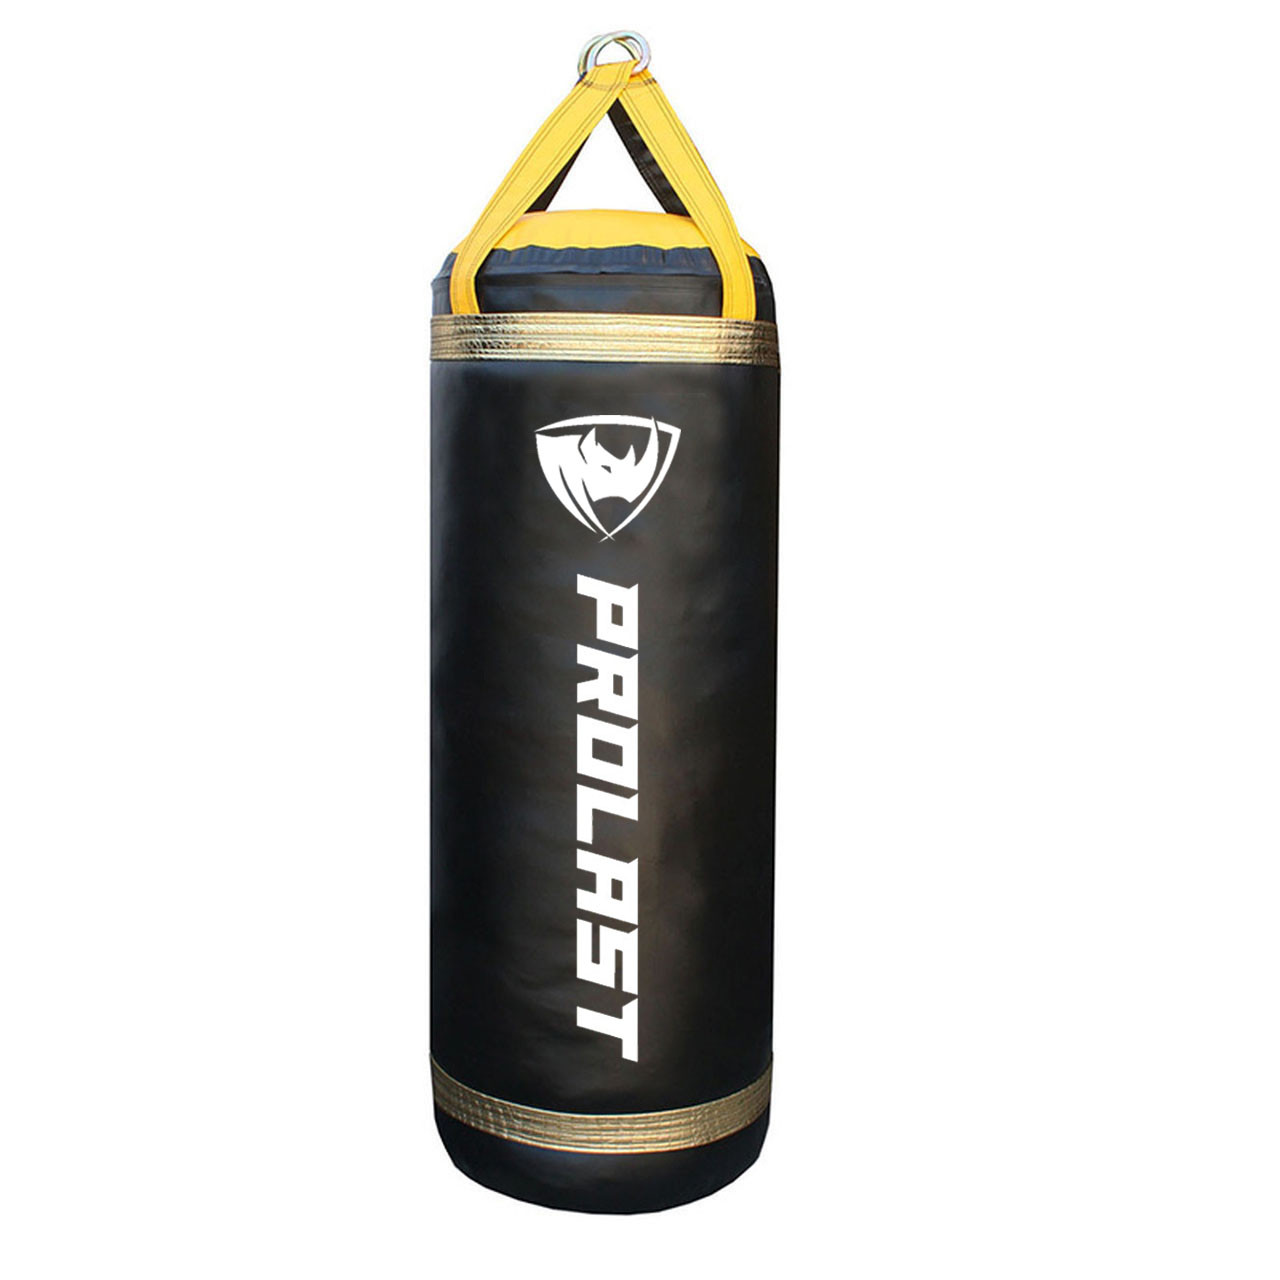 Gikpal Punching Bag Review - Freestanding Punching Bag